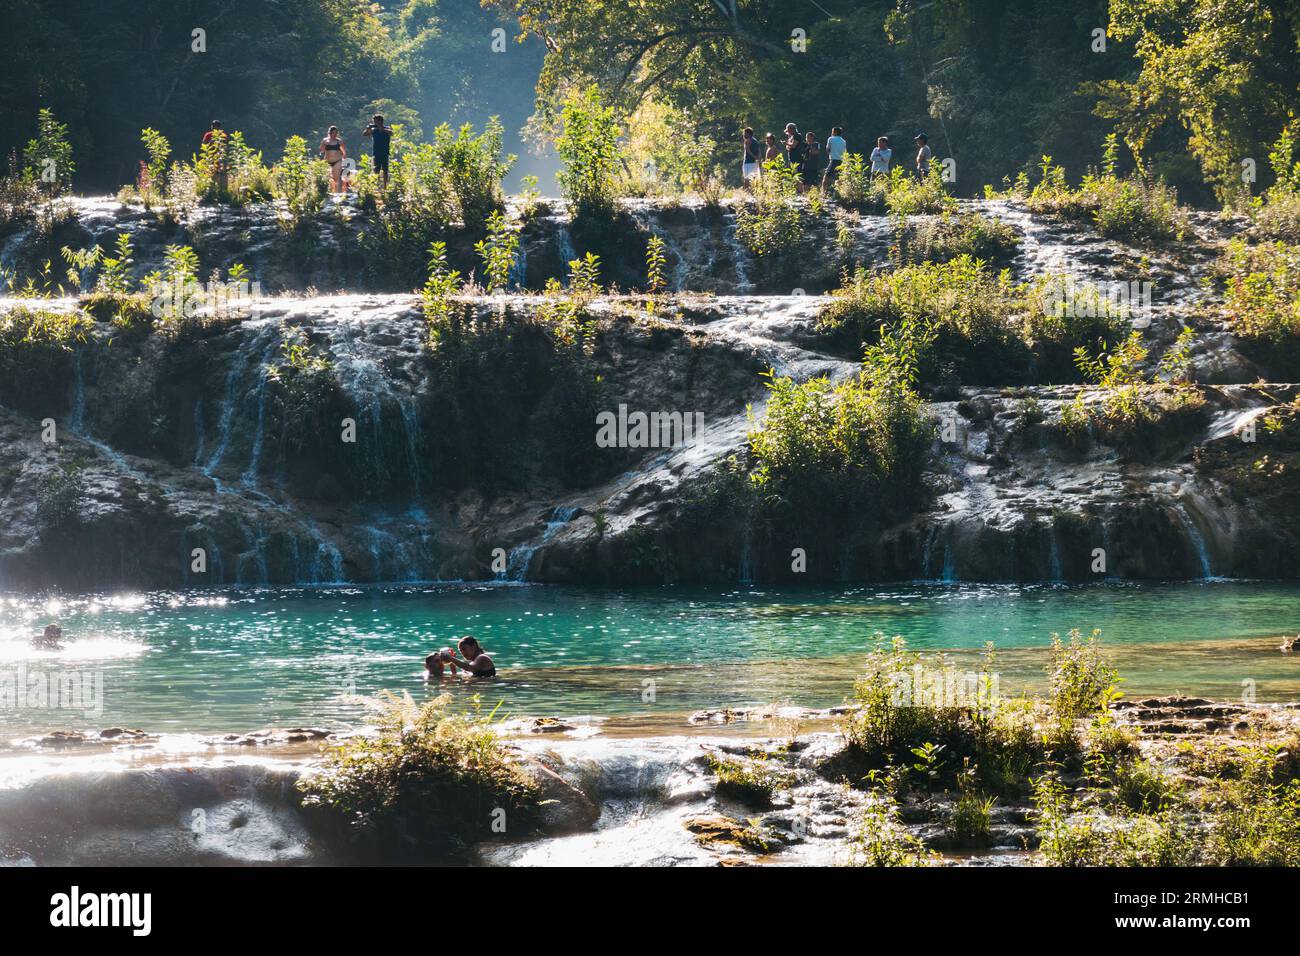 La rivière Cahabón tombe dans des niveaux de piscines sur le monument naturel de Semuc Champey, Guatemala. Les nageurs en tirent le meilleur parti par un après-midi ensoleillé Banque D'Images